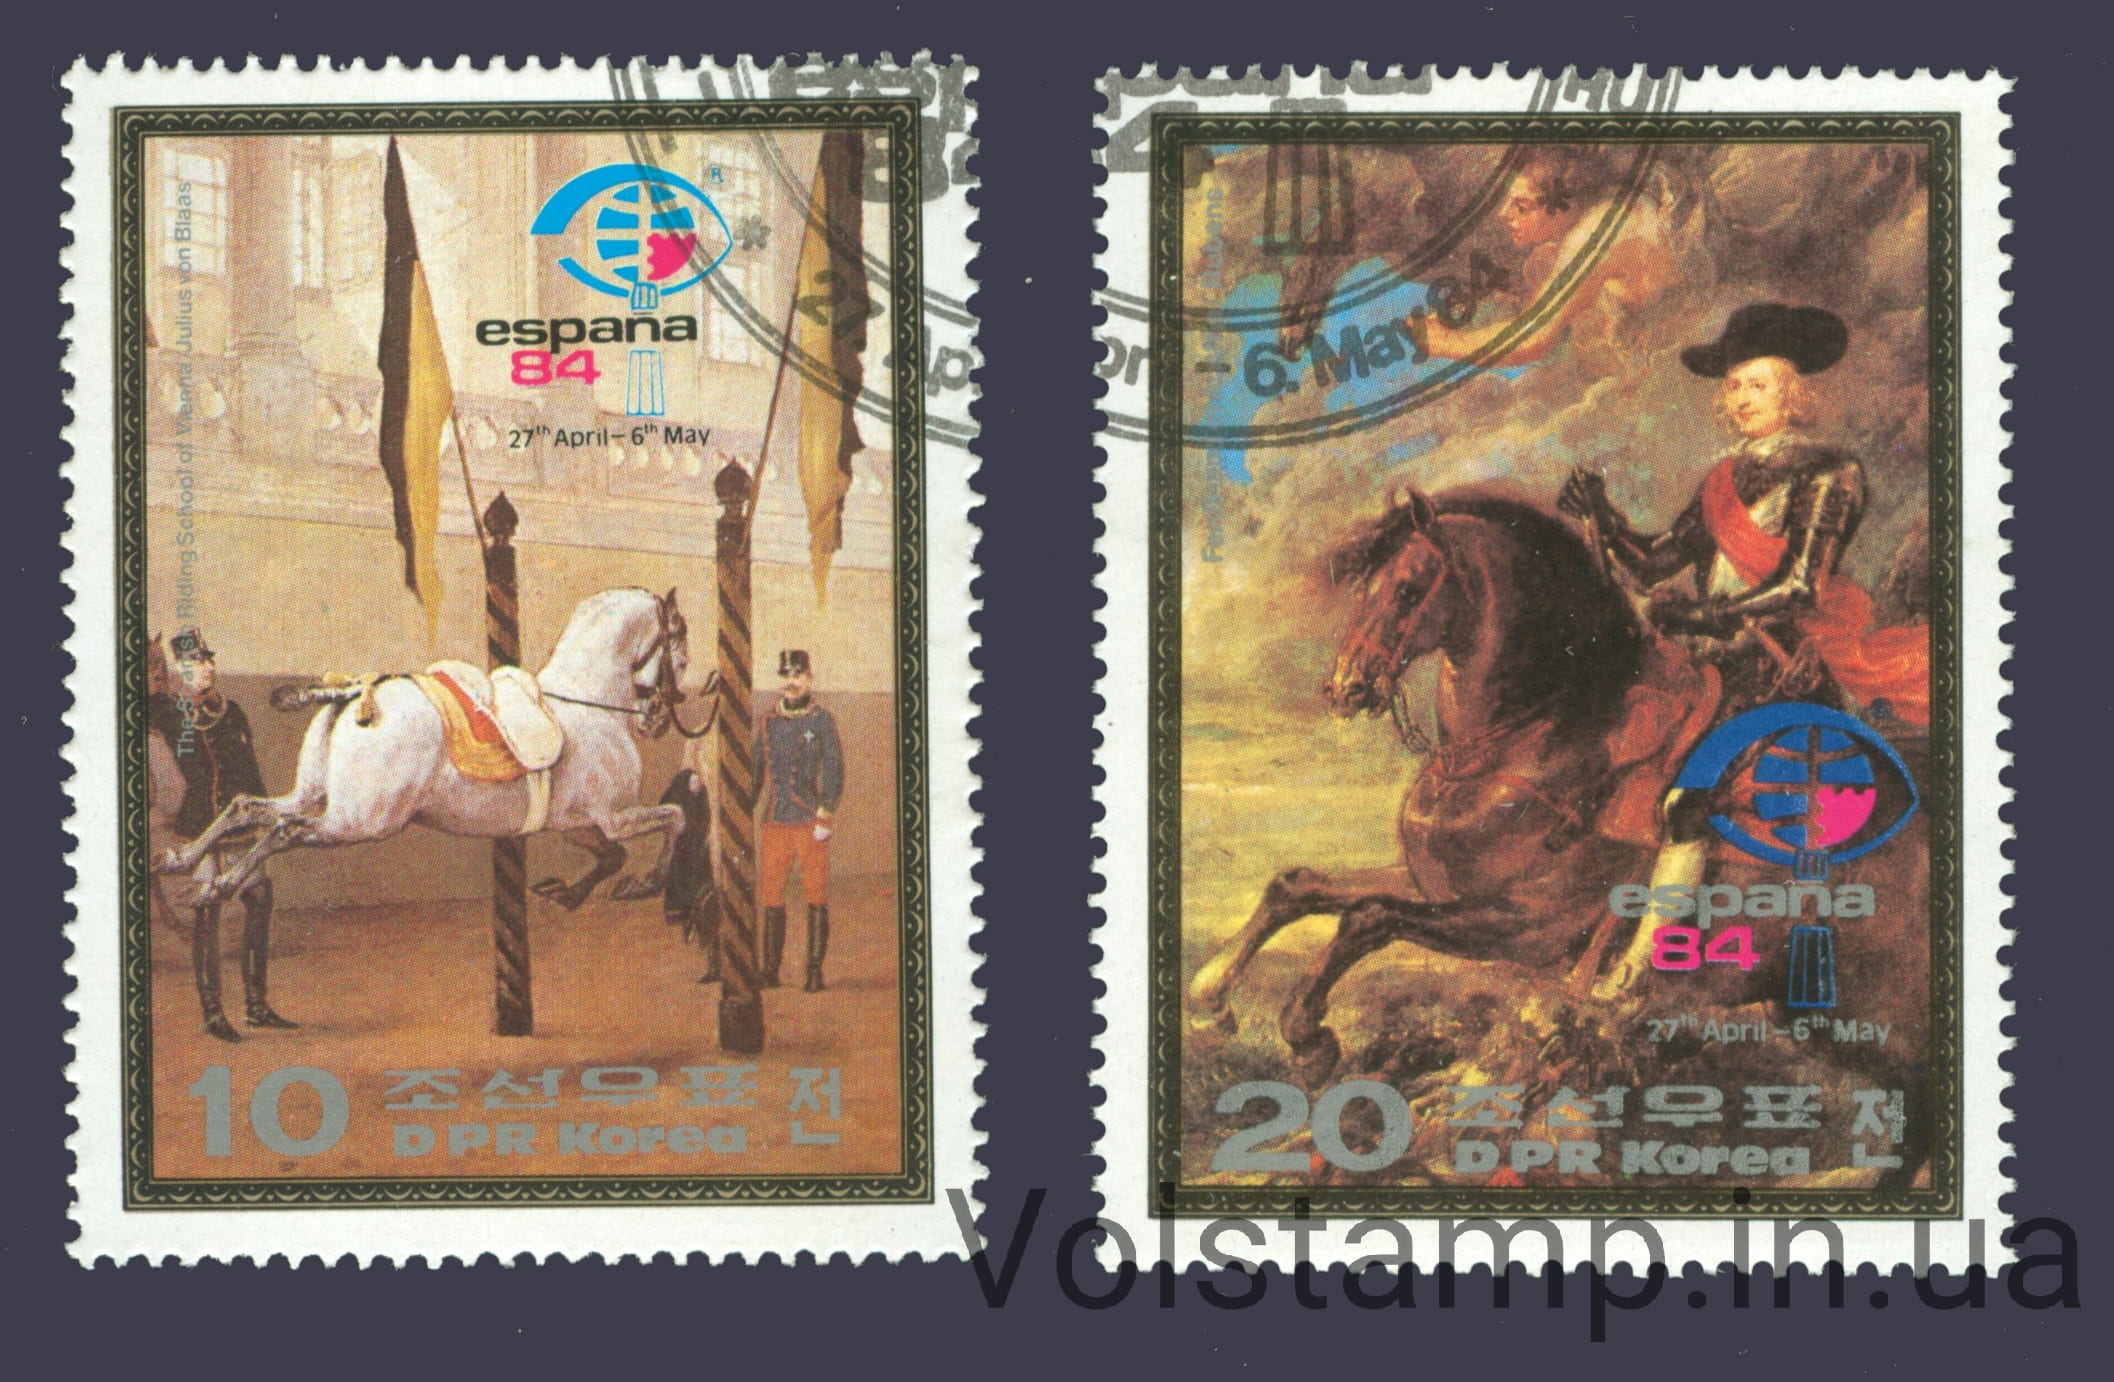 1984 Северная Корея Серия марок (Живопись, кони) Гашеные №2448-2449